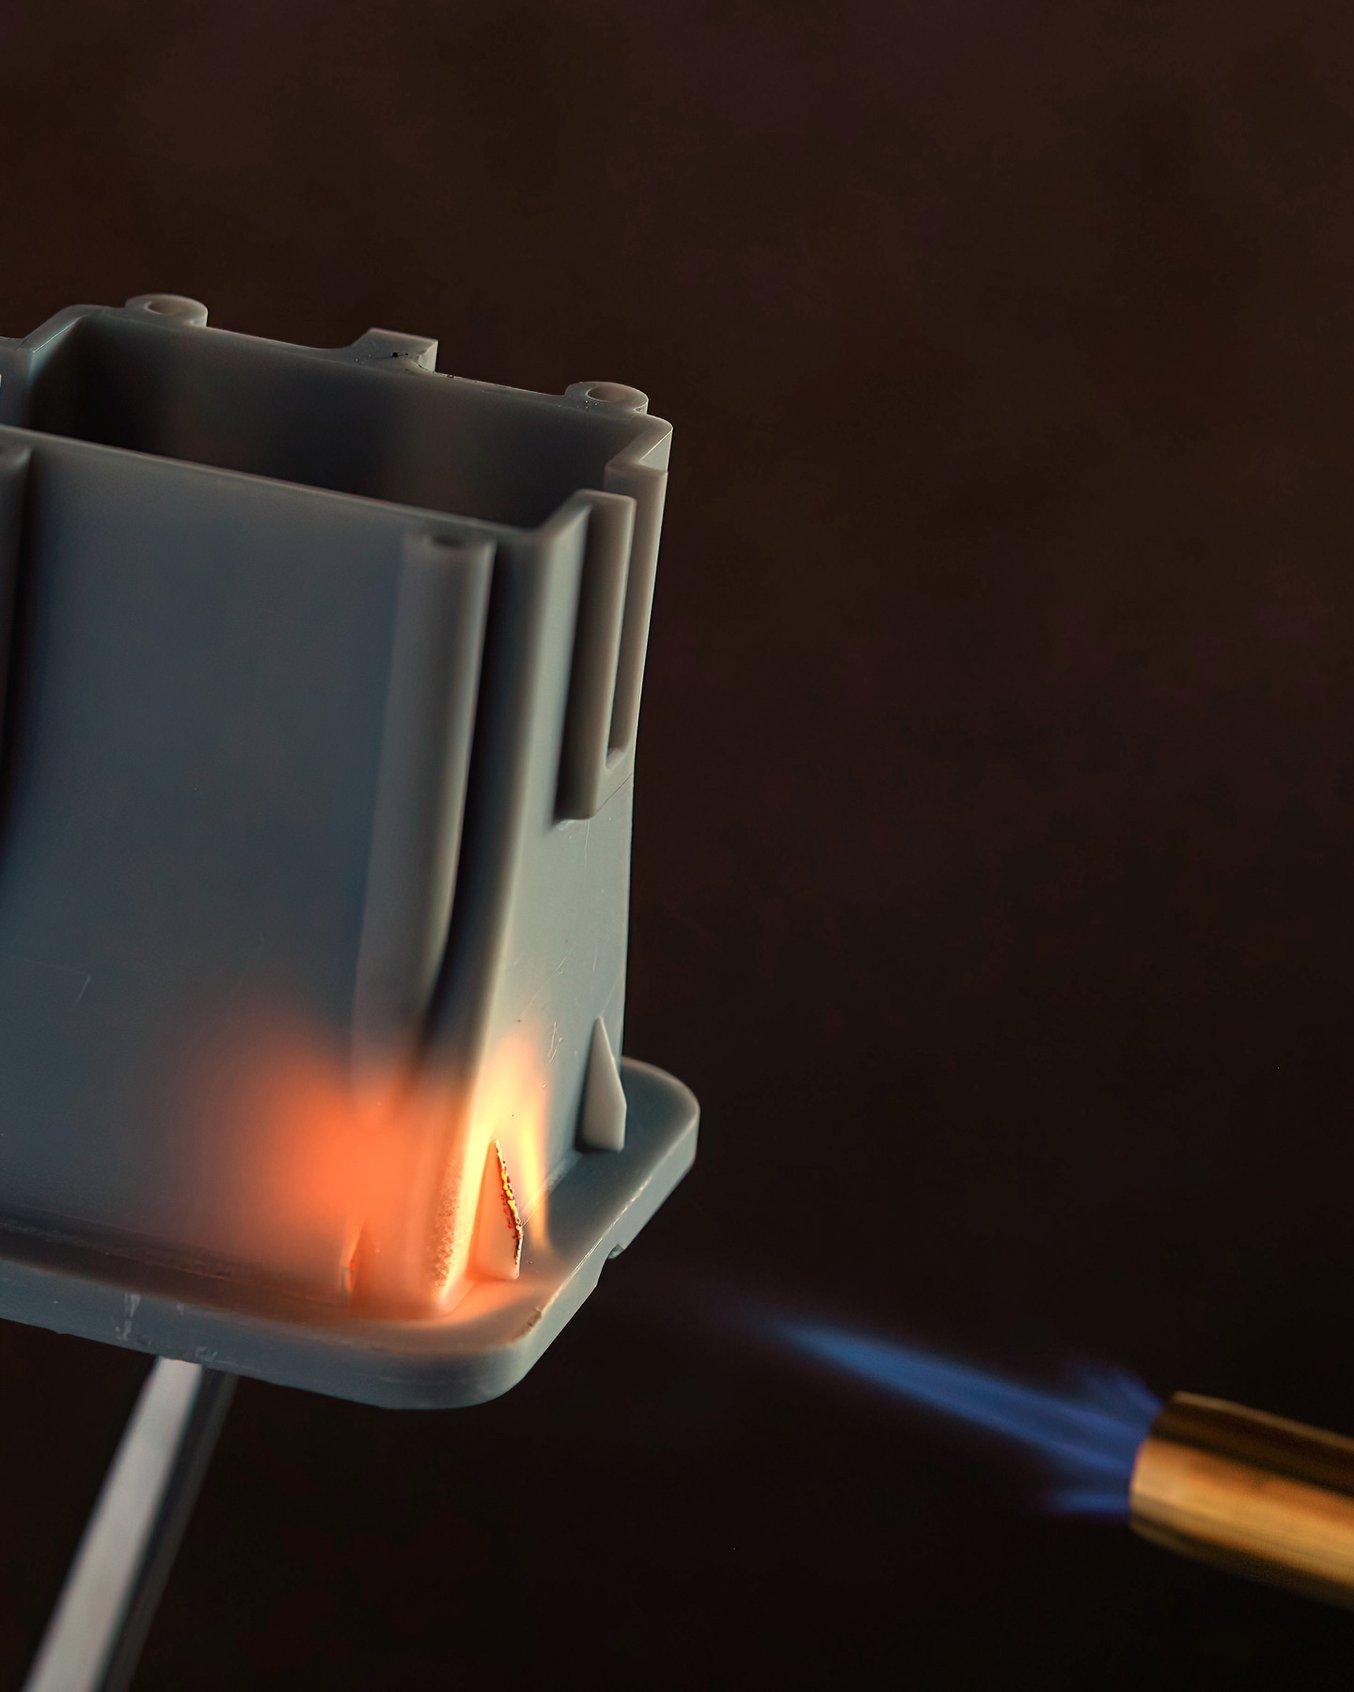 Soporte de calentador fabricado con la Flame Retardant Resin, con una llama apuntada directamente a él.